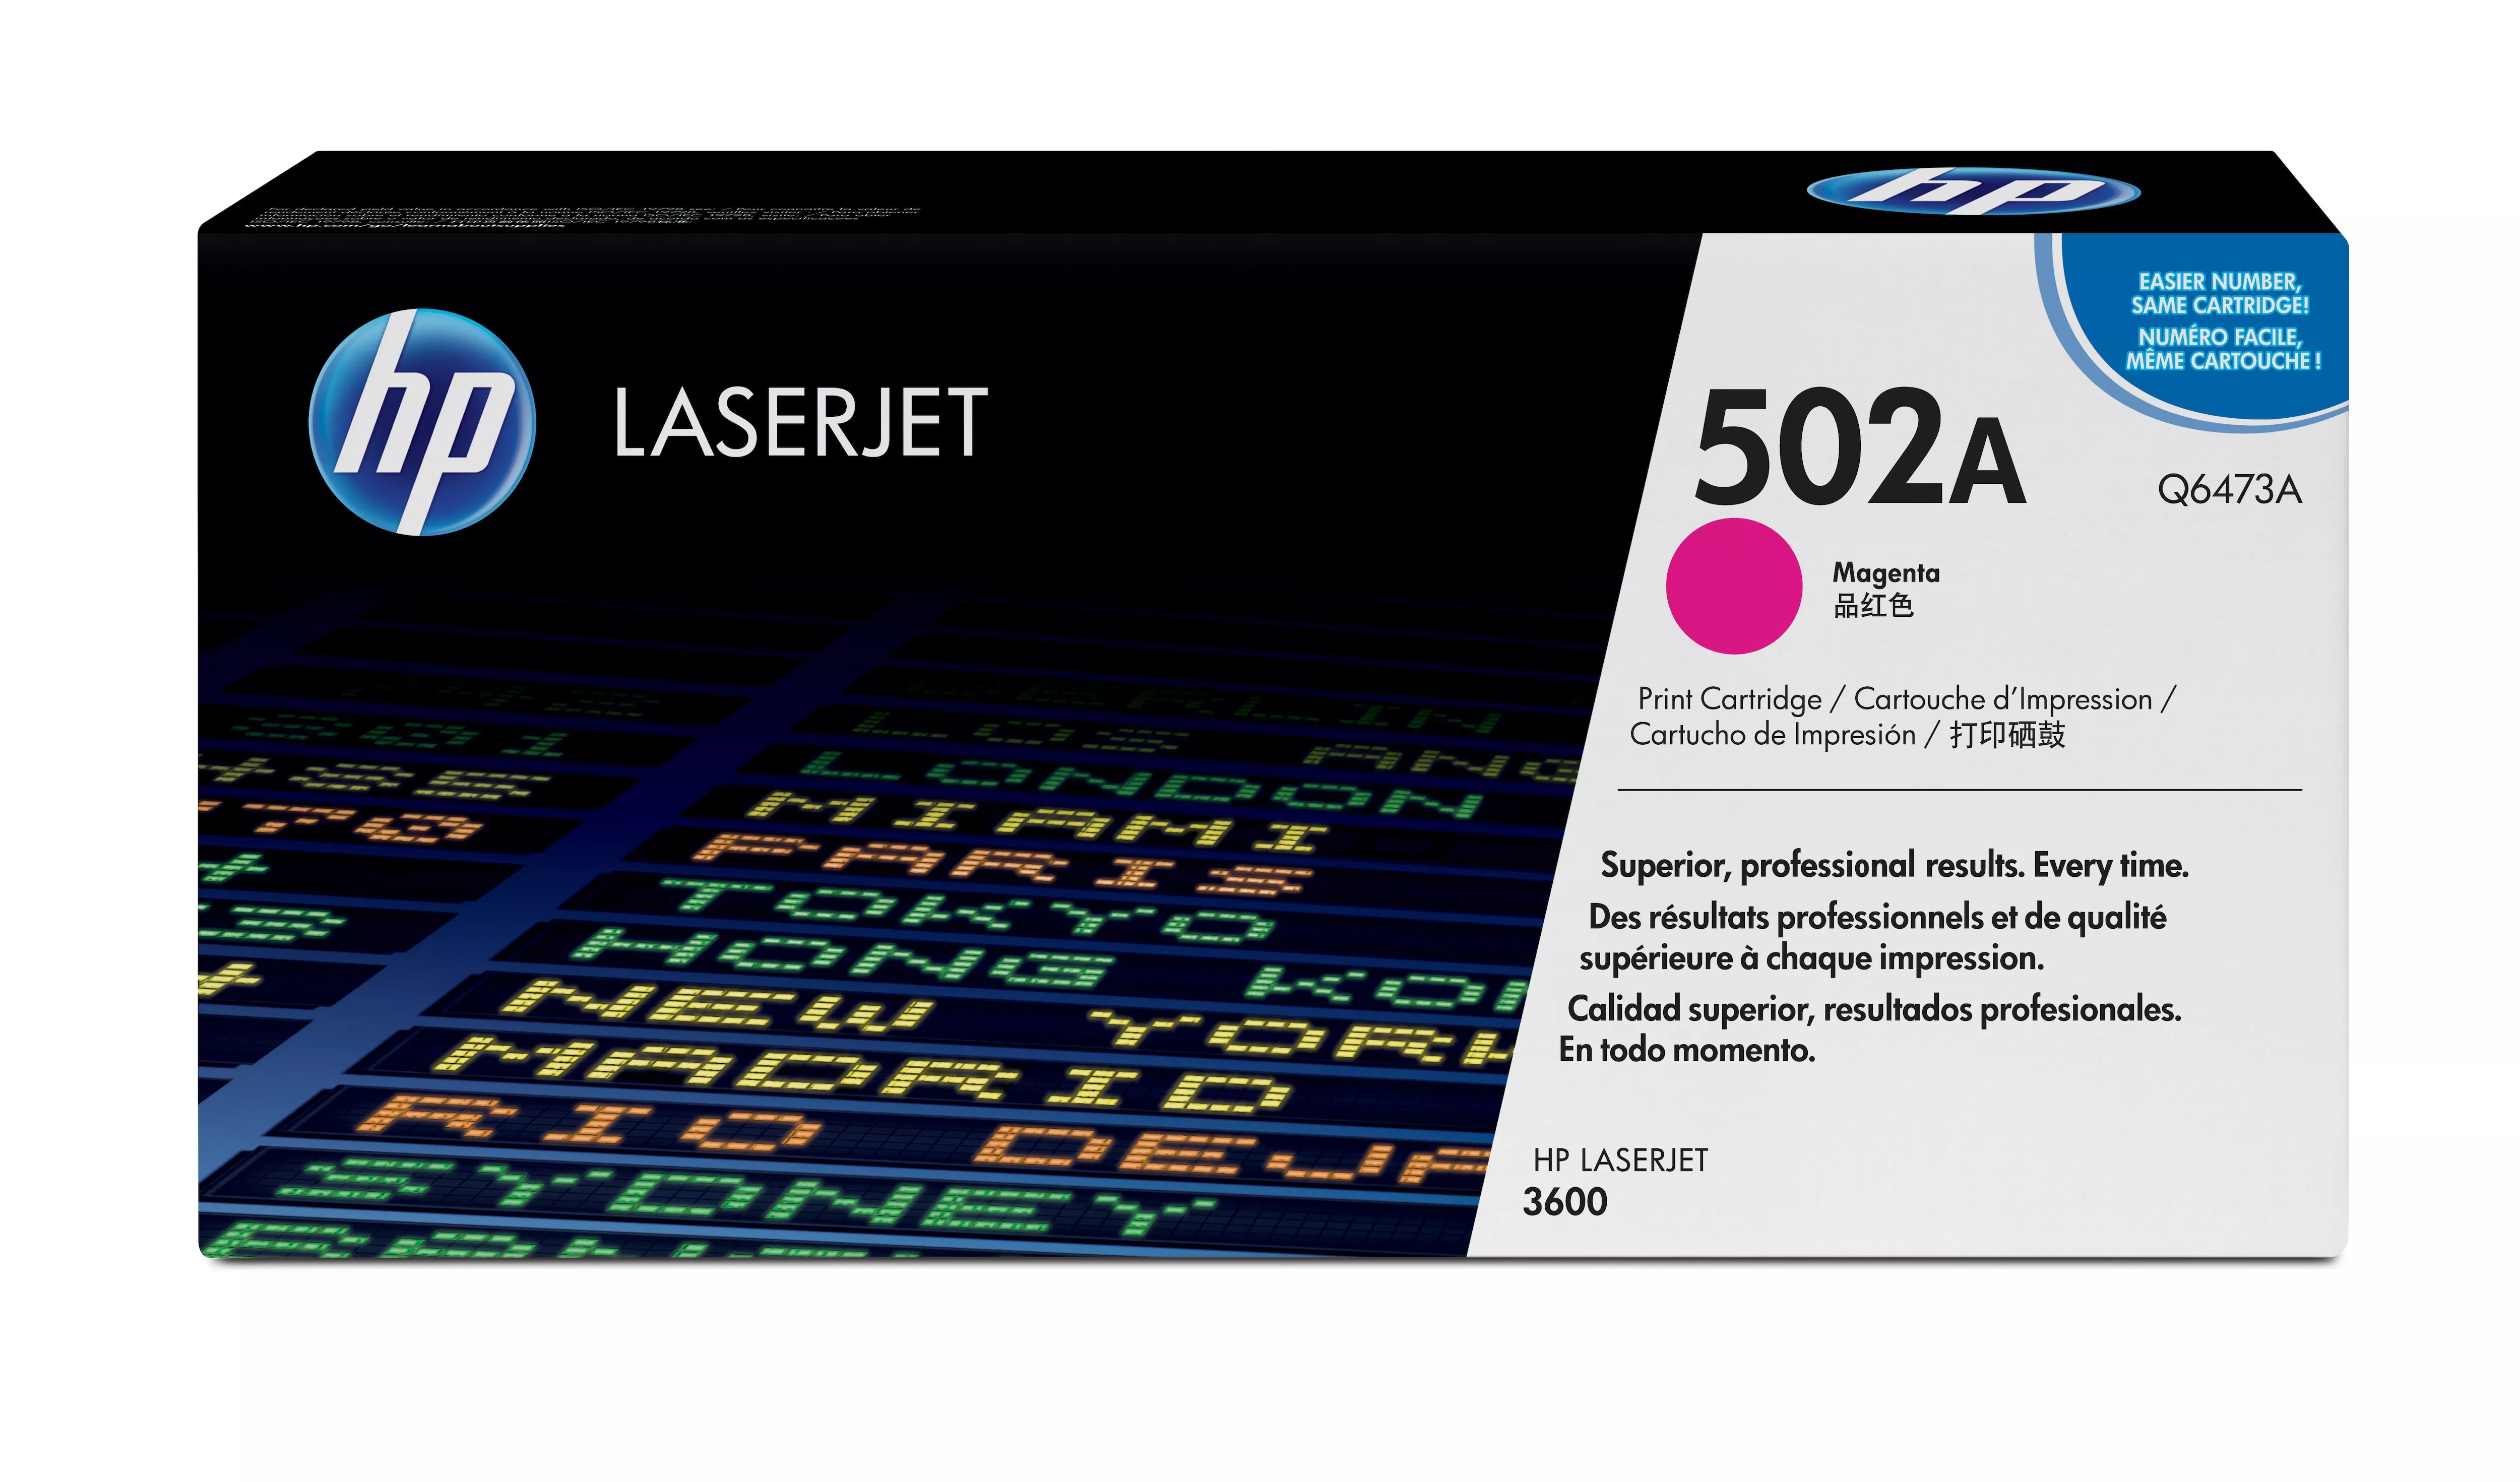 Achat HP 502A toner LaserJet magenta authentique au meilleur prix